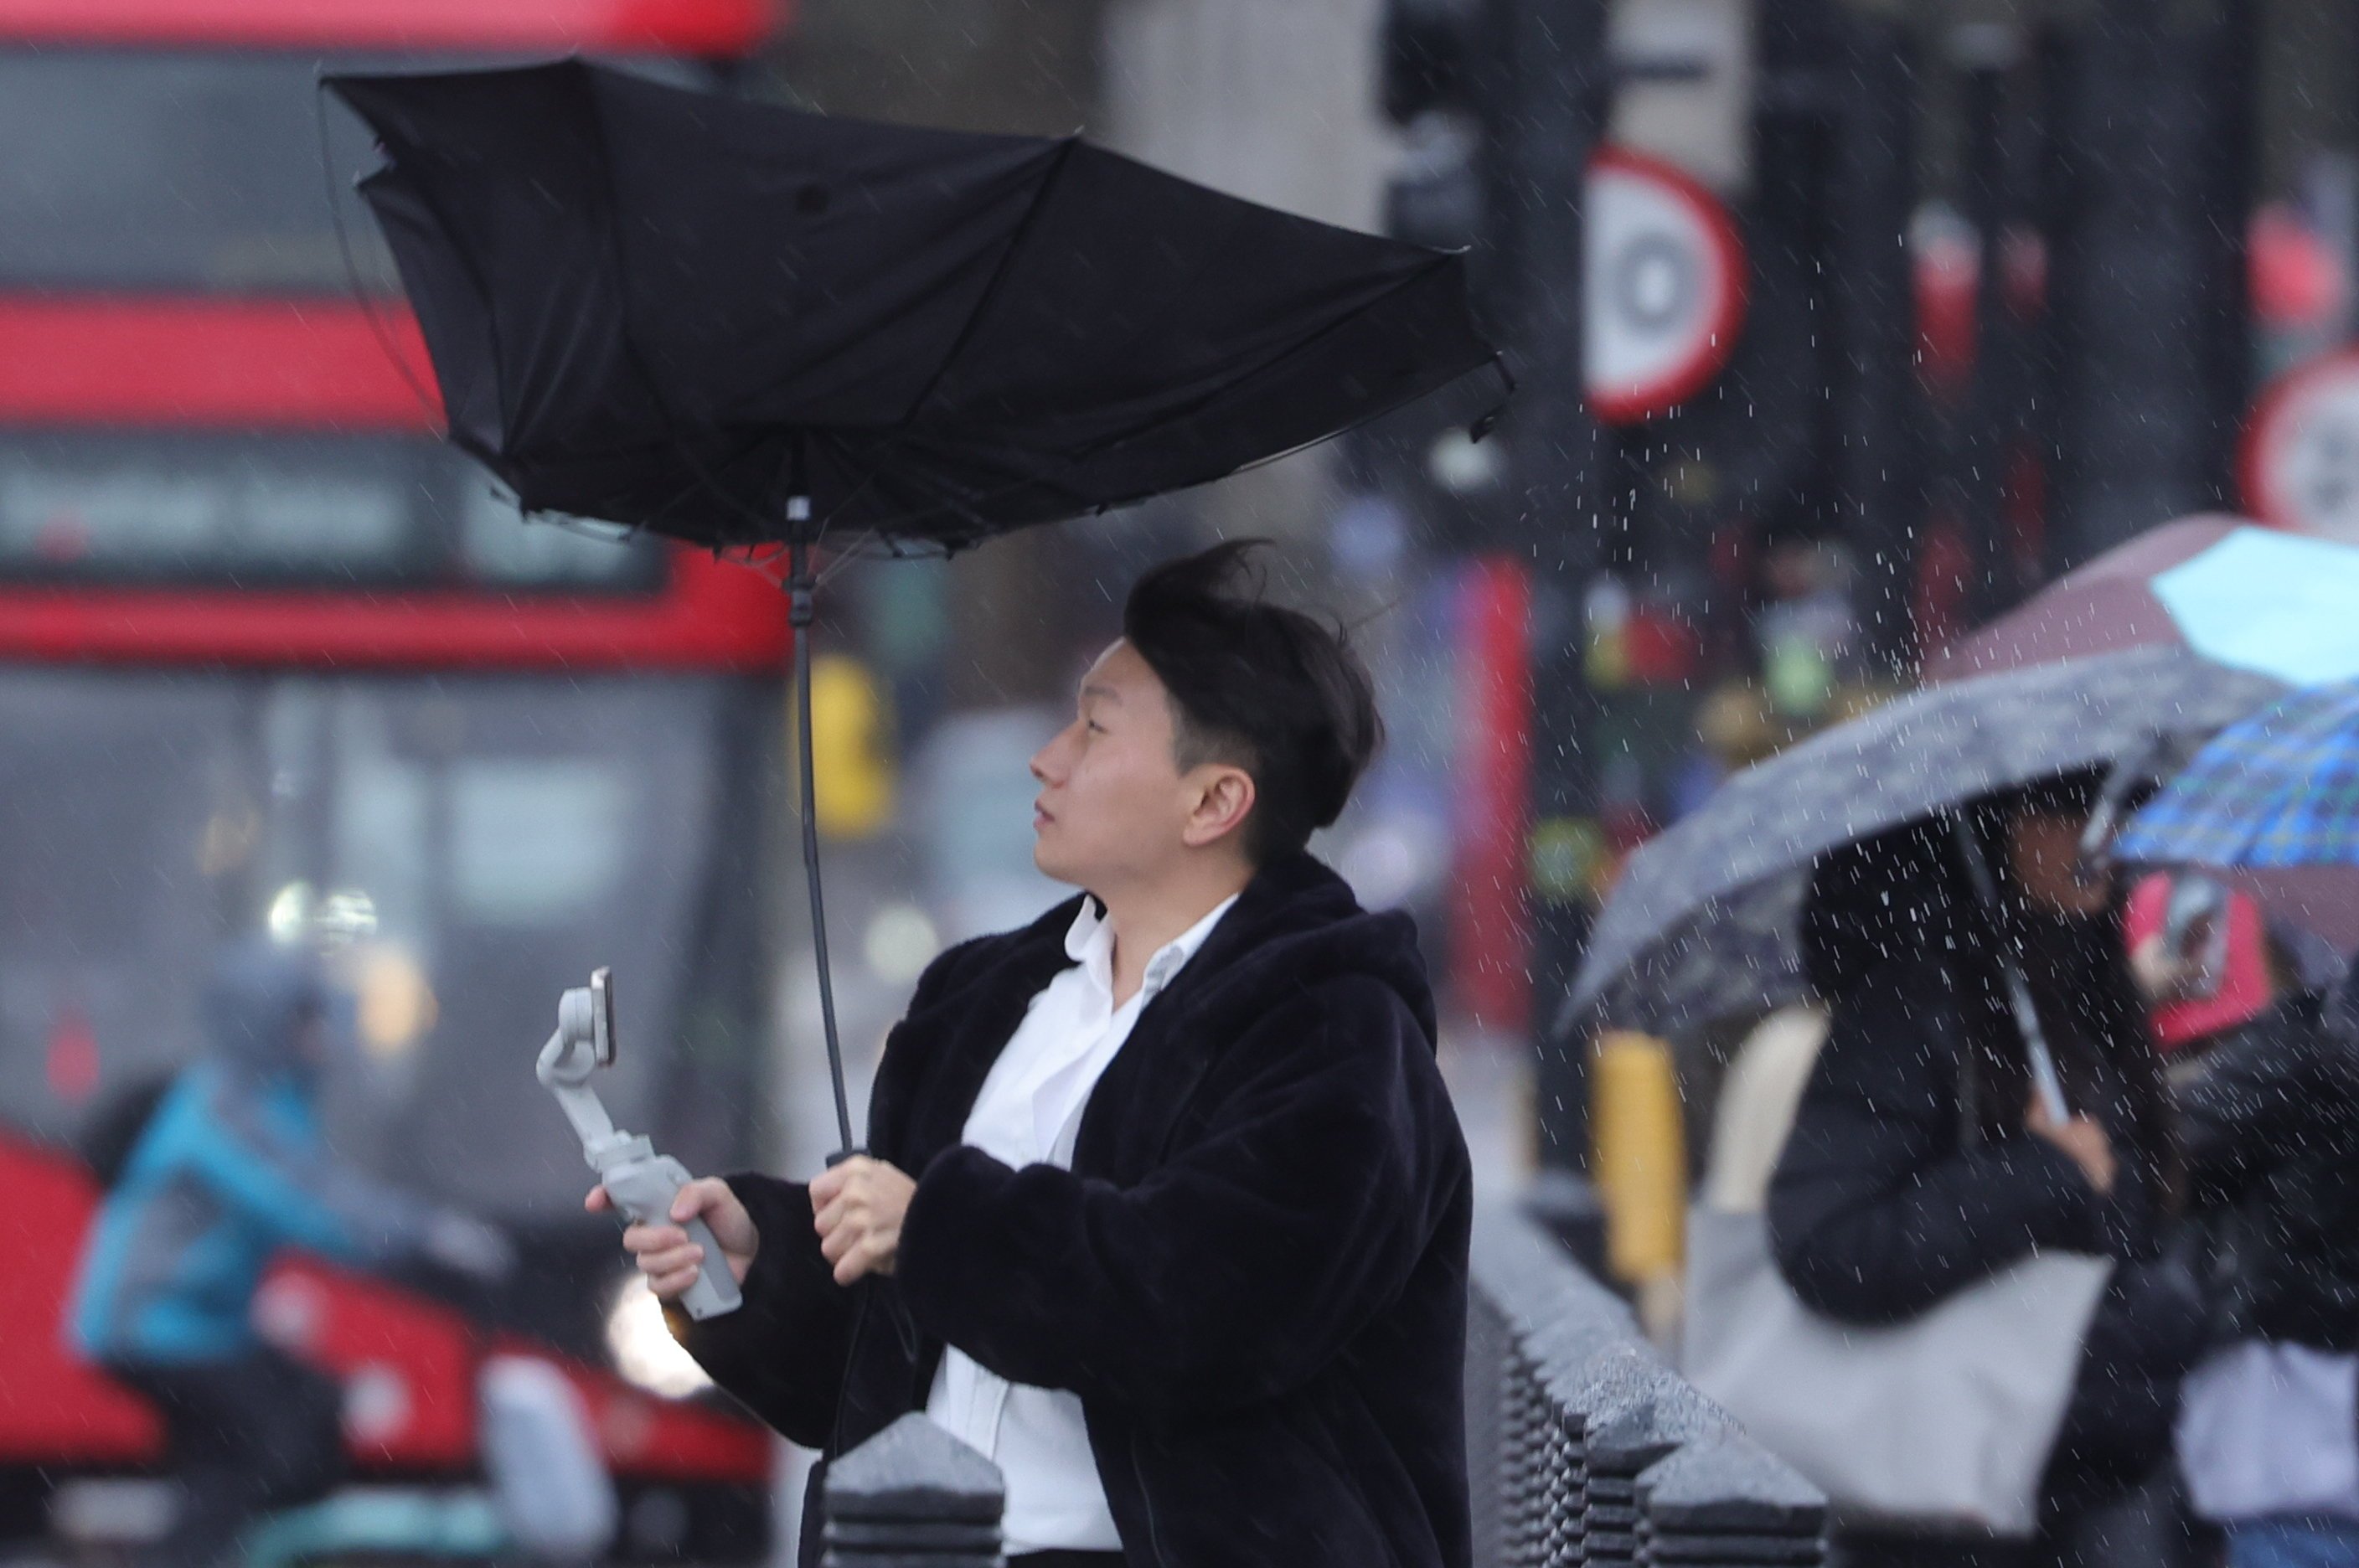 Дождь в лондоне. Лондонский дождь. Человек под дождем. Лондонский зонт.